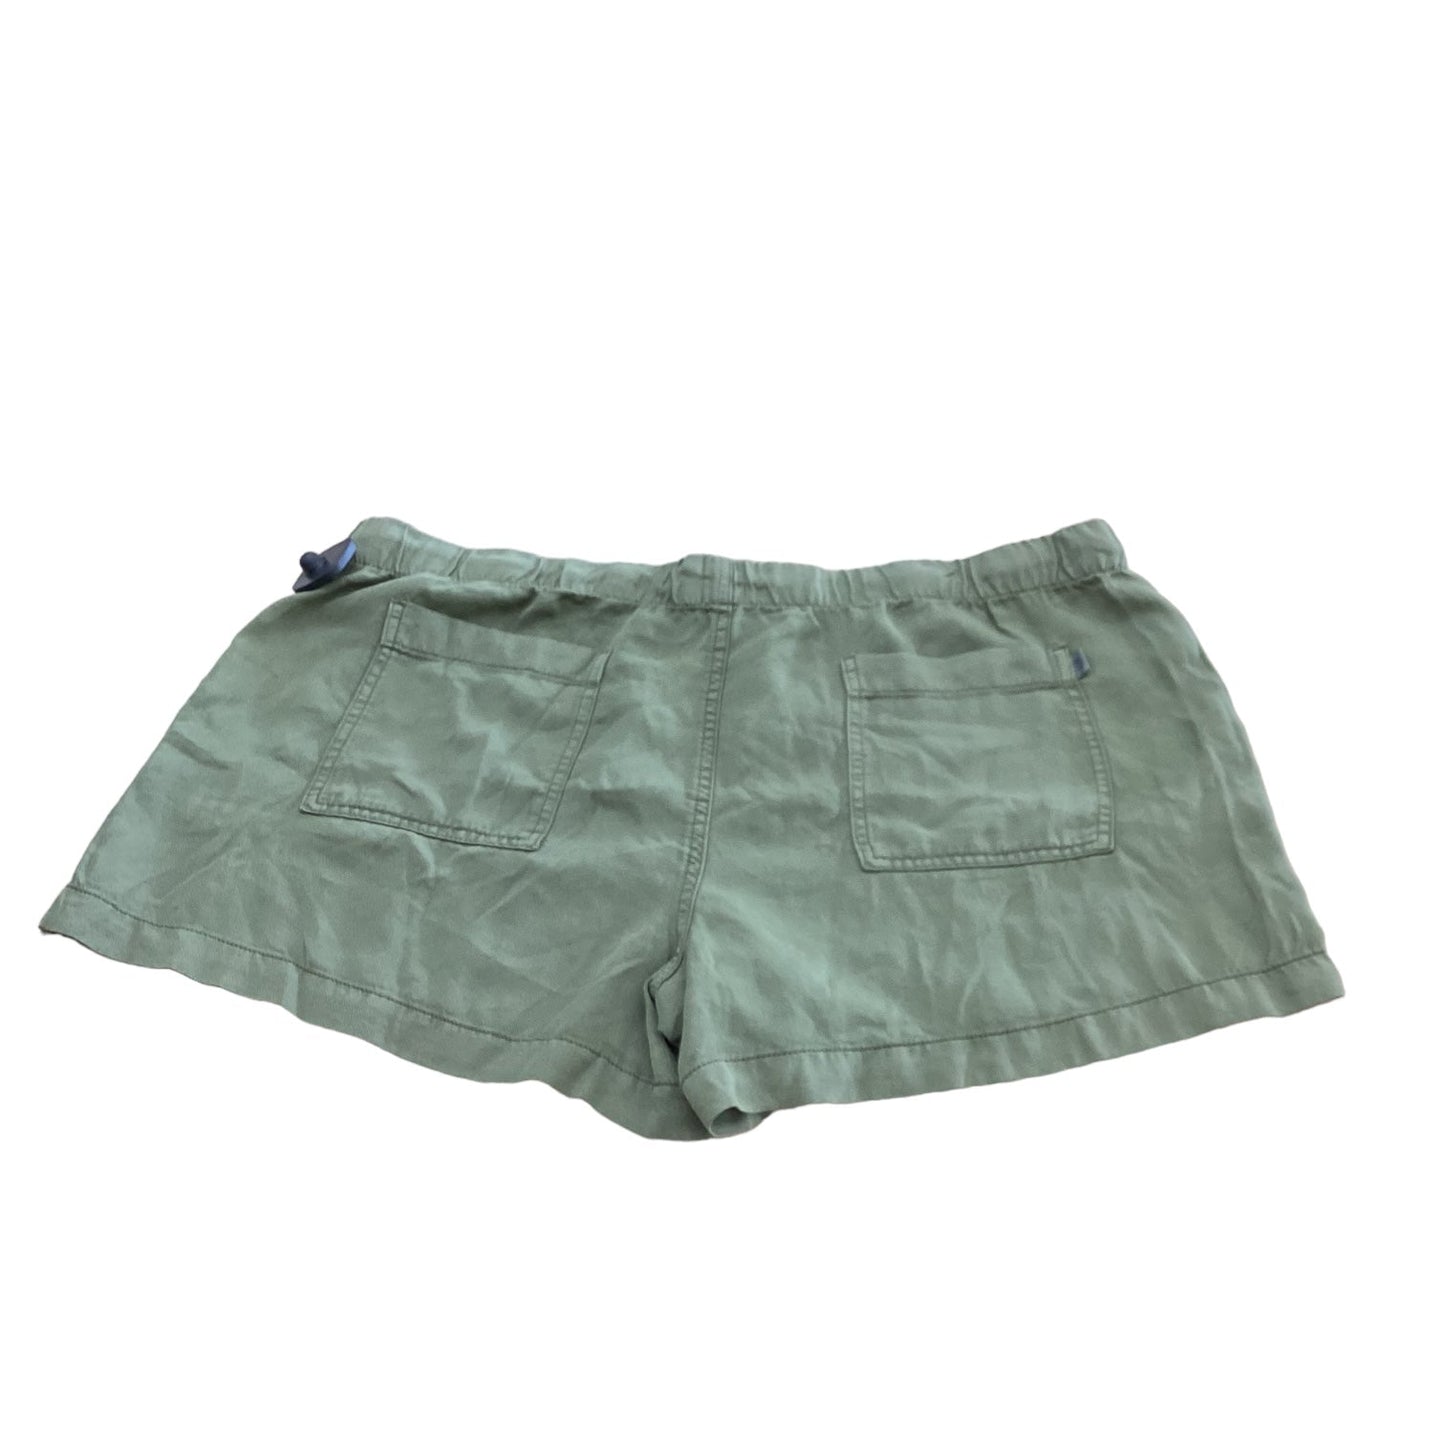 Green Shorts Gap, Size 14